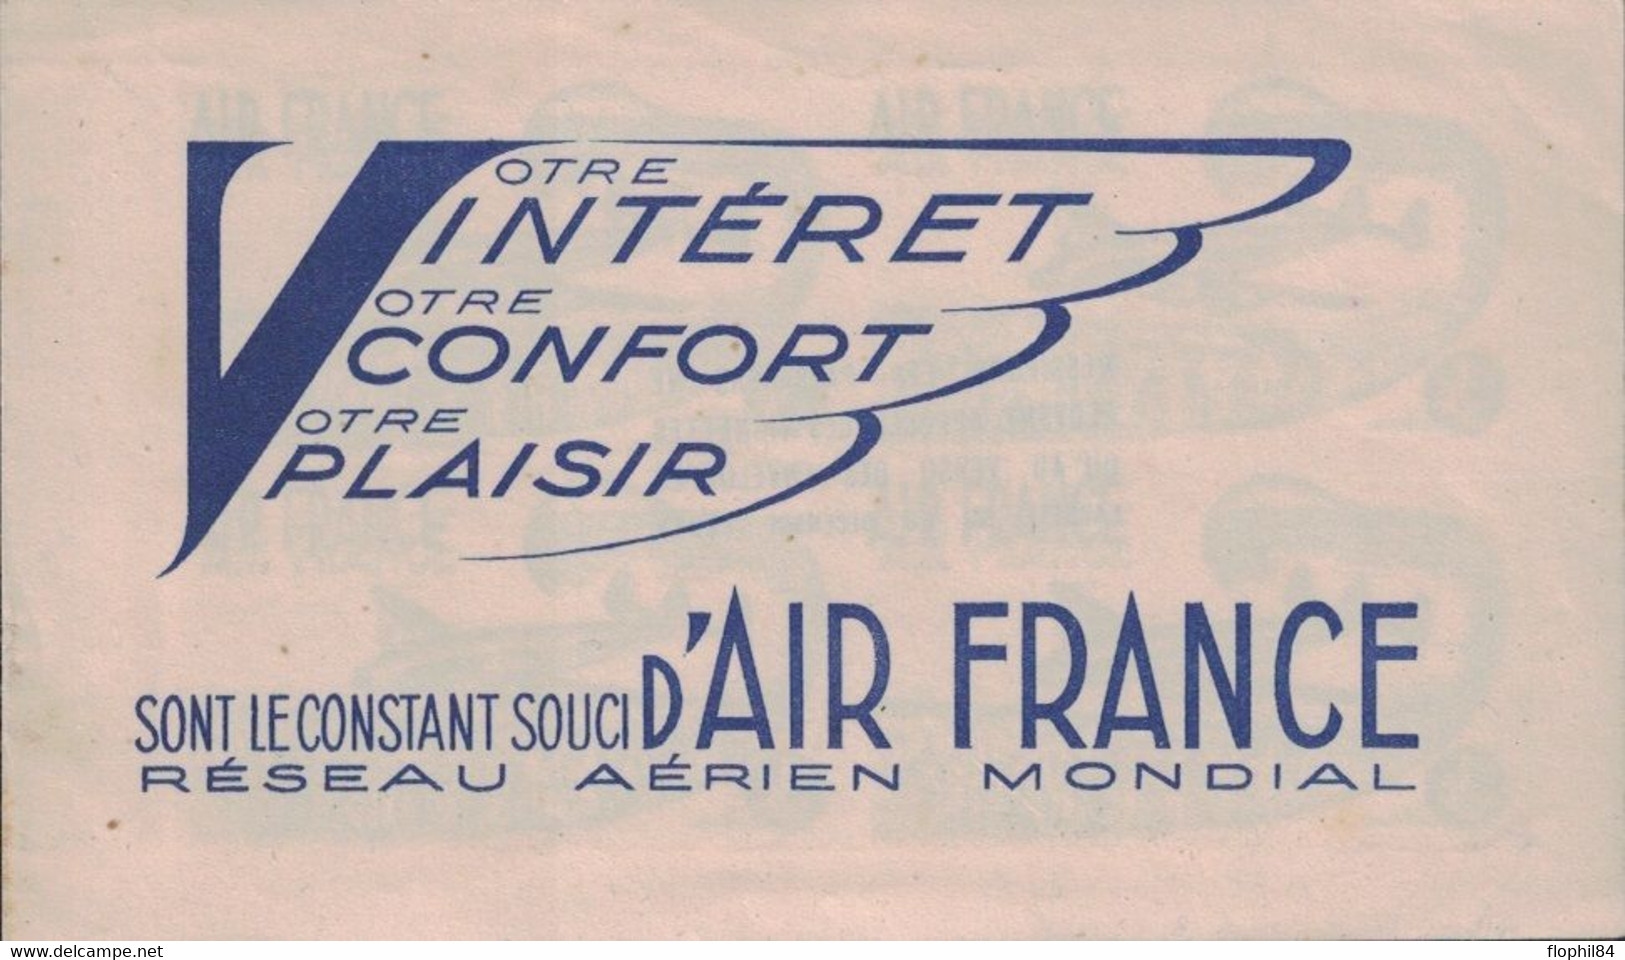 AIR FRANCE - VOTRE INTERET VOTRE CONFORT VOTRE PLAISIR SONT LE CONSTANT SOUCI D'AIR FRANCE - CARNET 4 VIGNETTES. - Luftfahrt